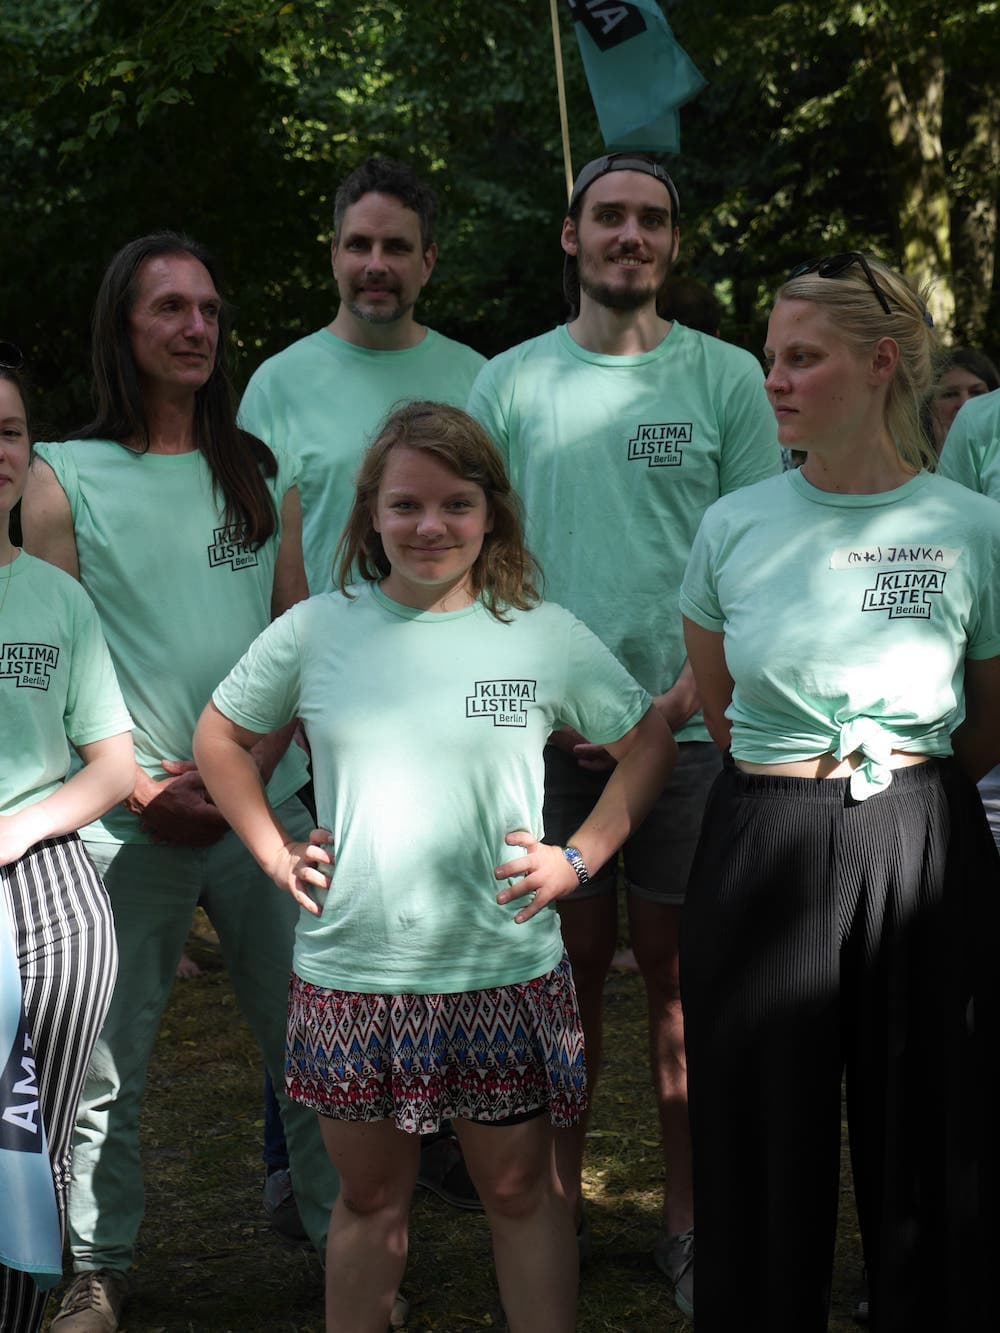 Marit in Klimalisten Shirt, selbstsicher mit Parteikolleginnen.